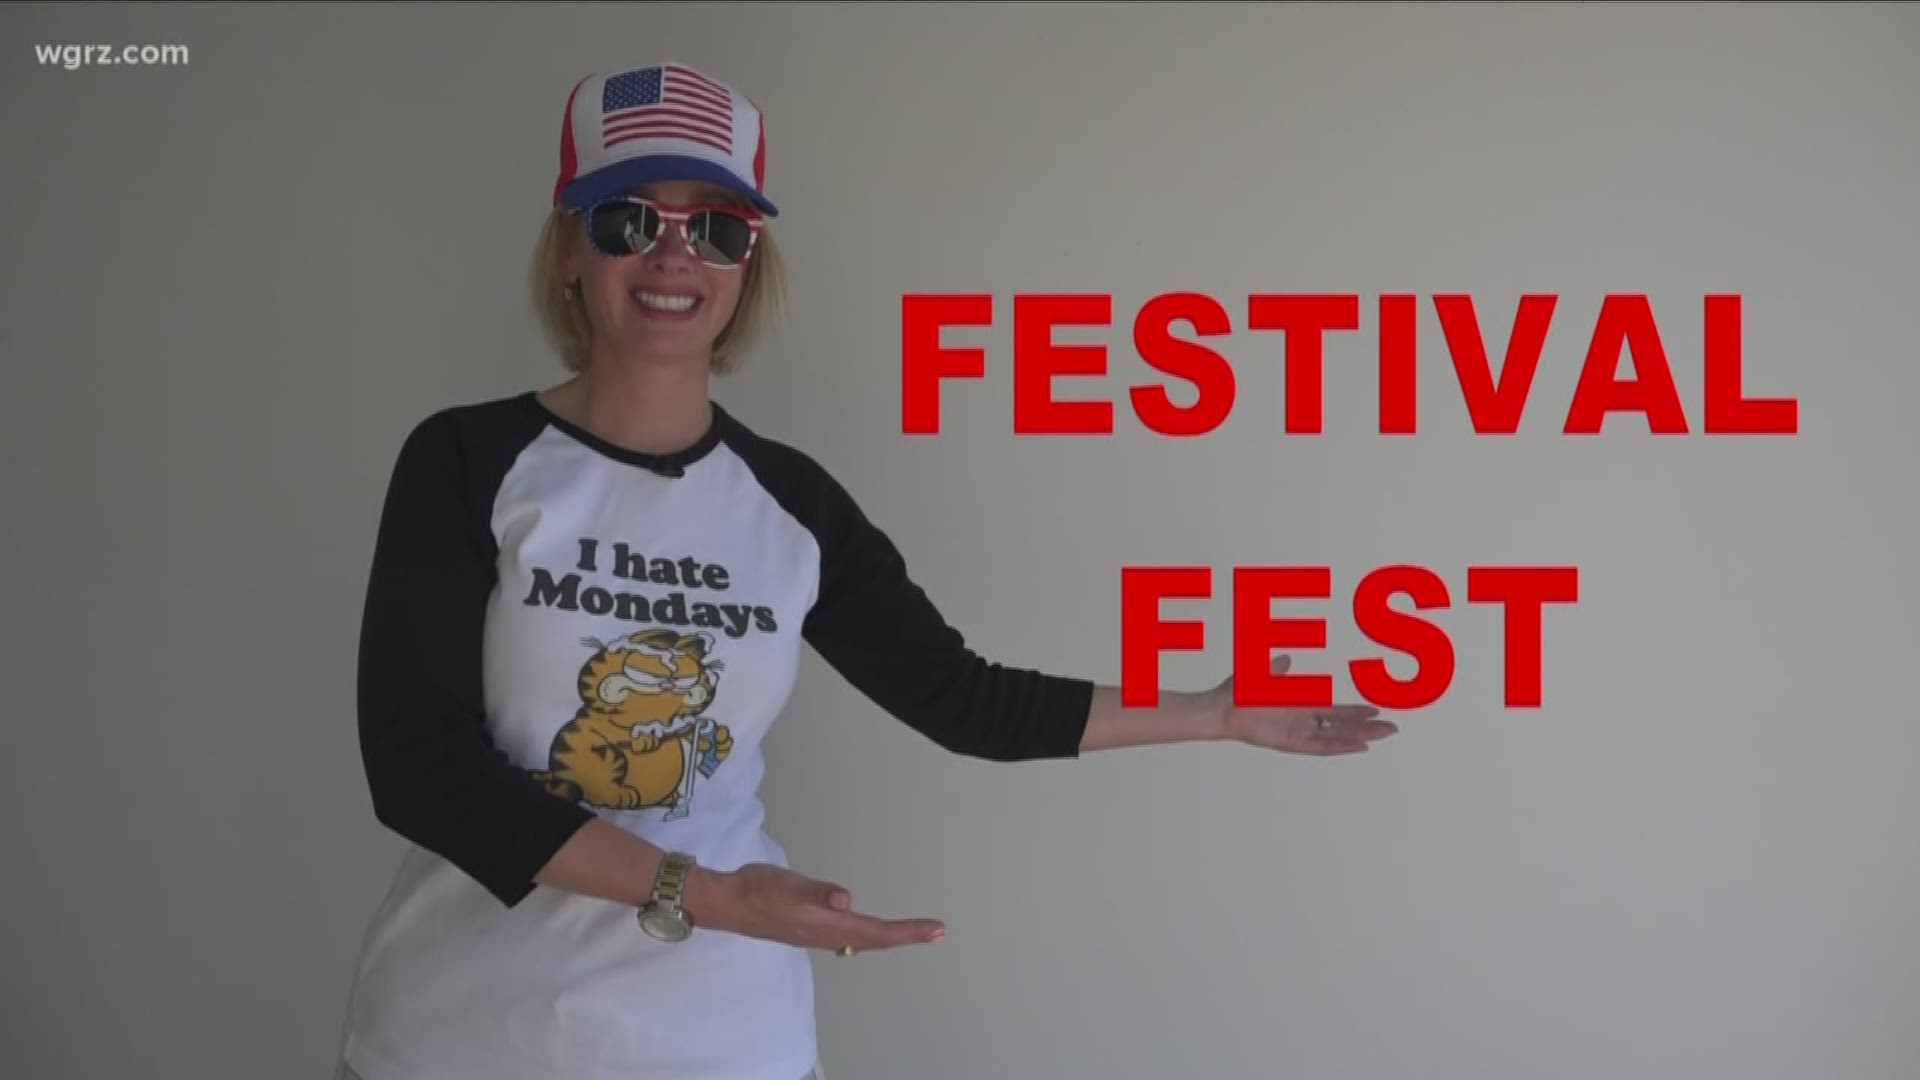 Kate's festival fest: the week in festivals